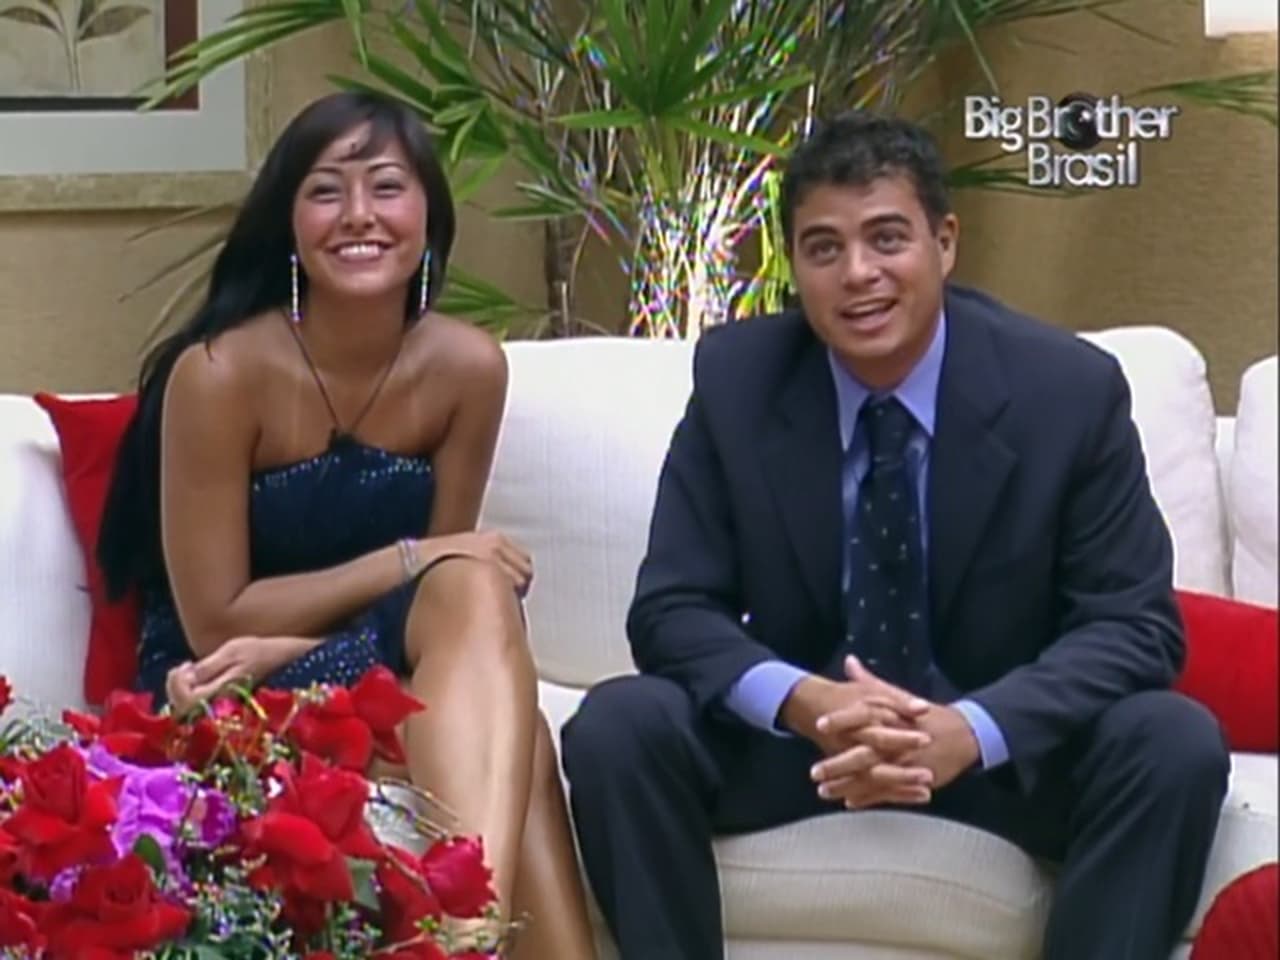 Big Brother Brasil - Season 3 Episode 54 : Episode 54